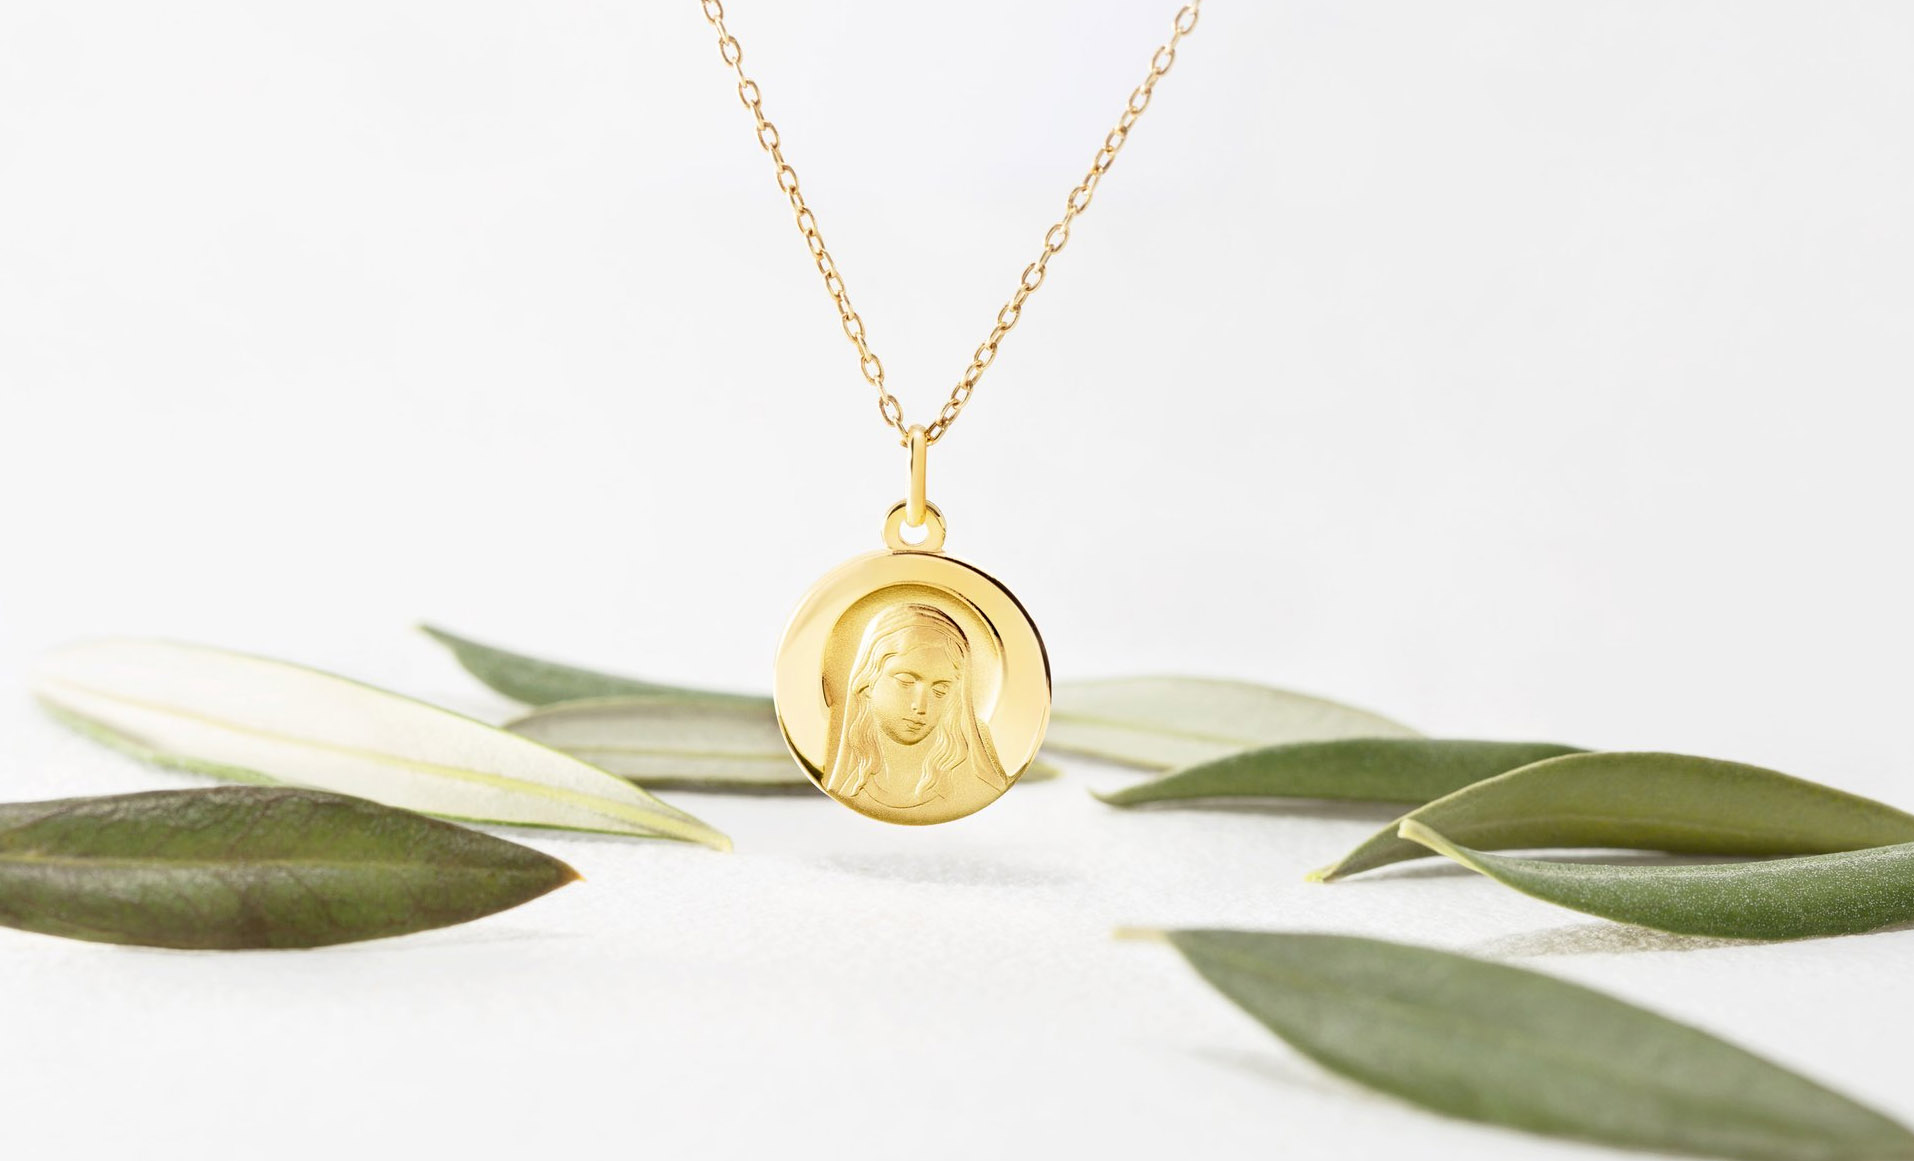 Medalla de virgen en oro con cadena recomendada como regalo de comunion, el colgante está sobre fondo blanco con hojas de color verde